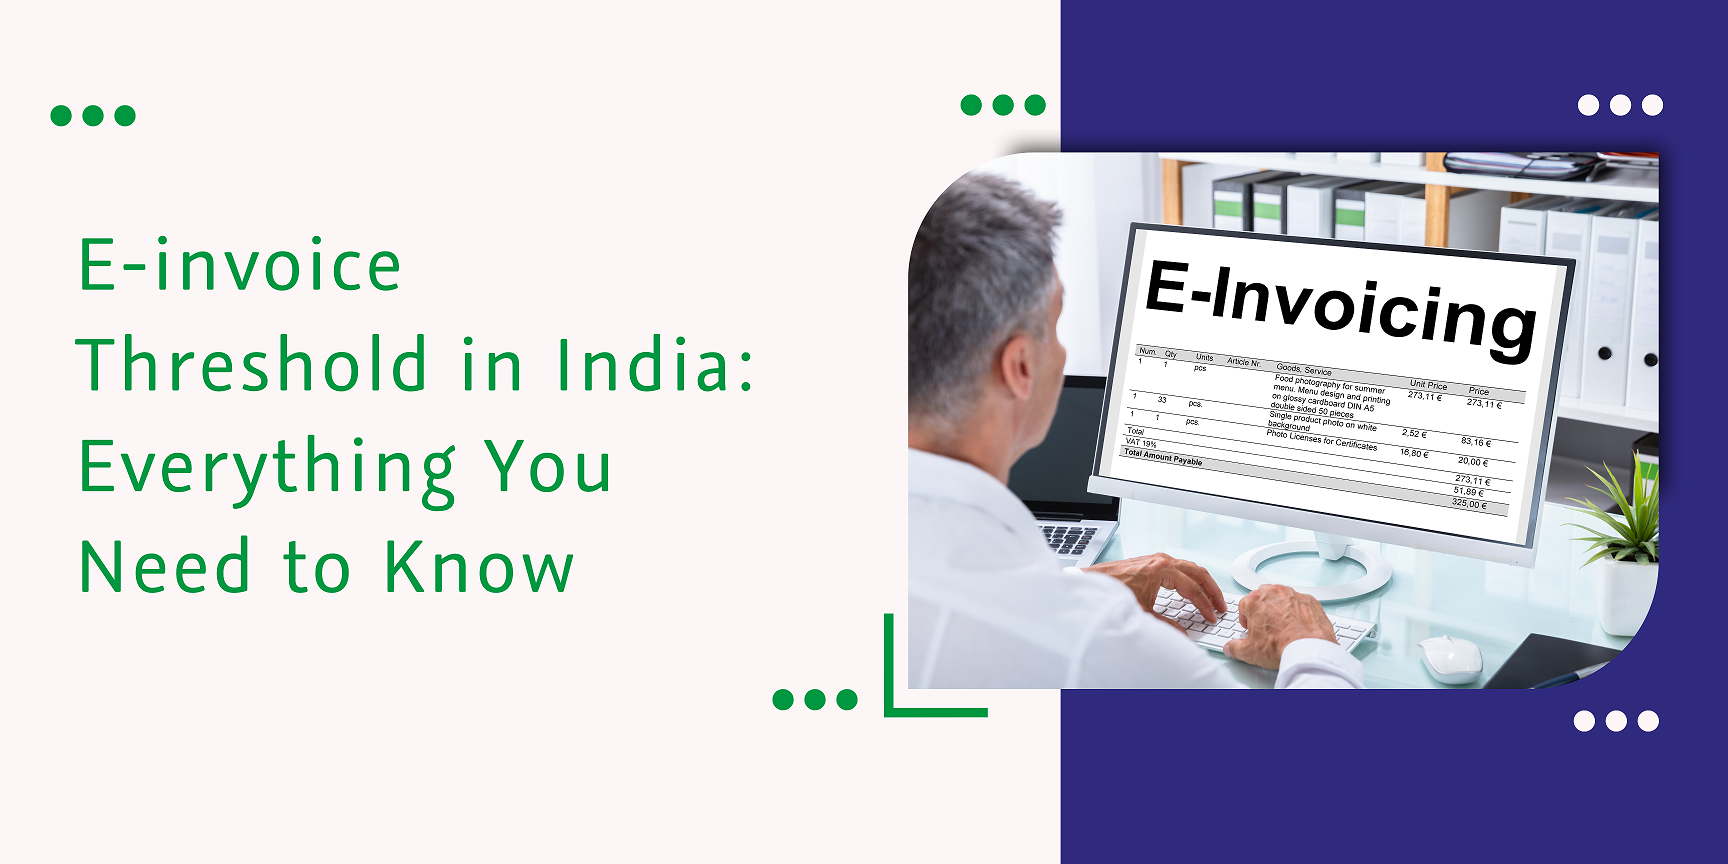 CaptainBiz: E-invoice Threshold in India